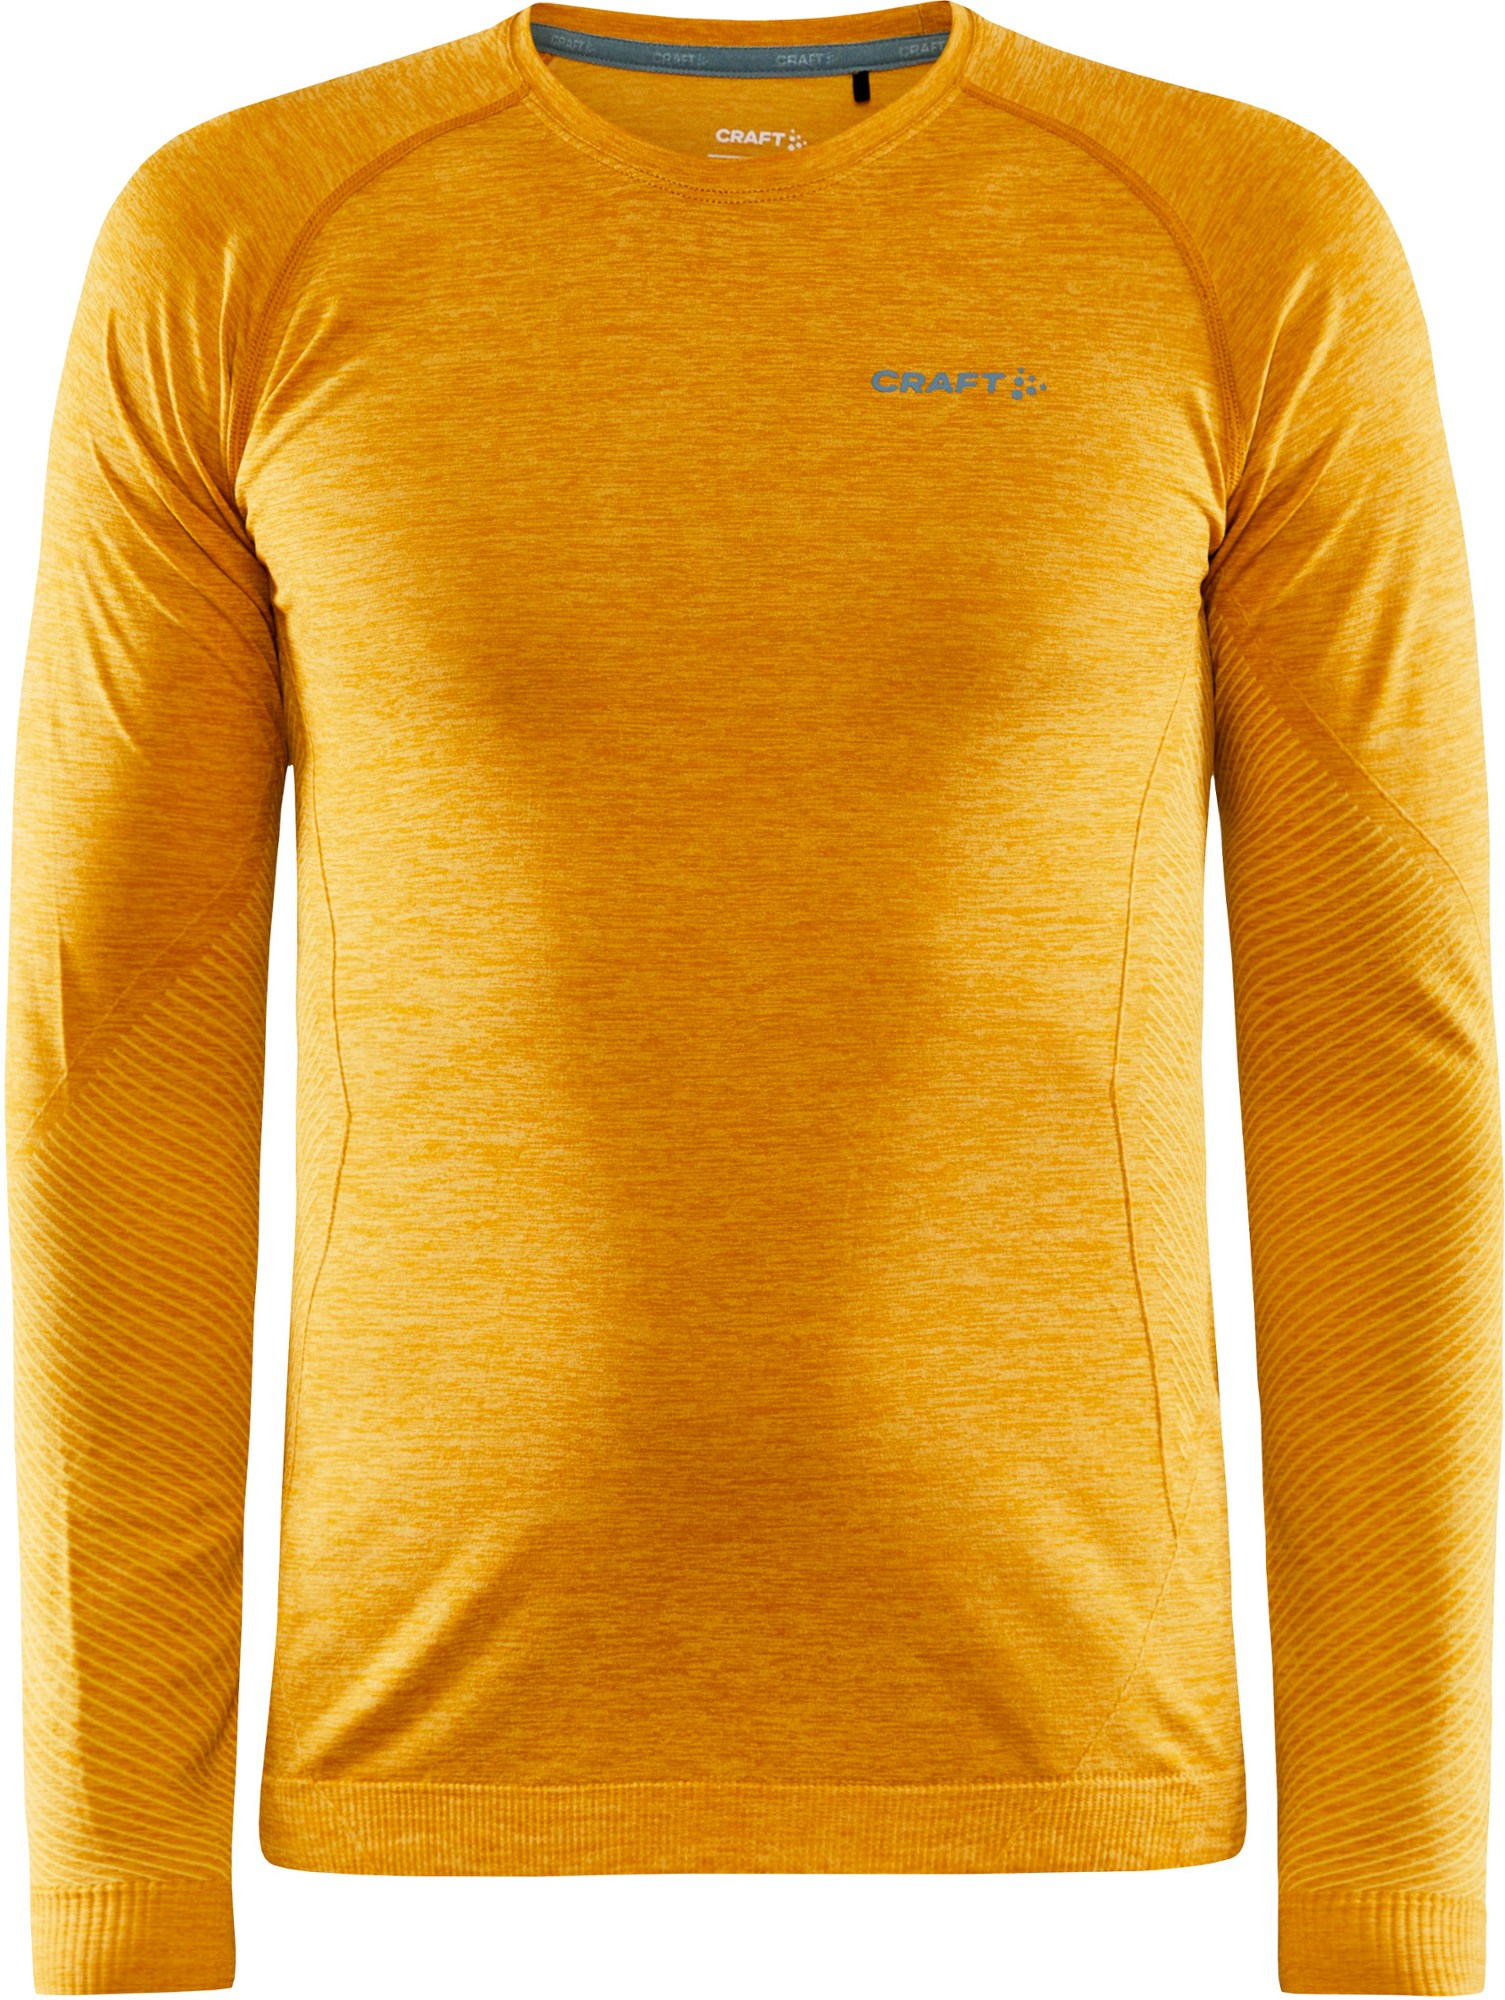 Базовый топ CORE Dry Active Comfort – мужской Craft, оранжевый